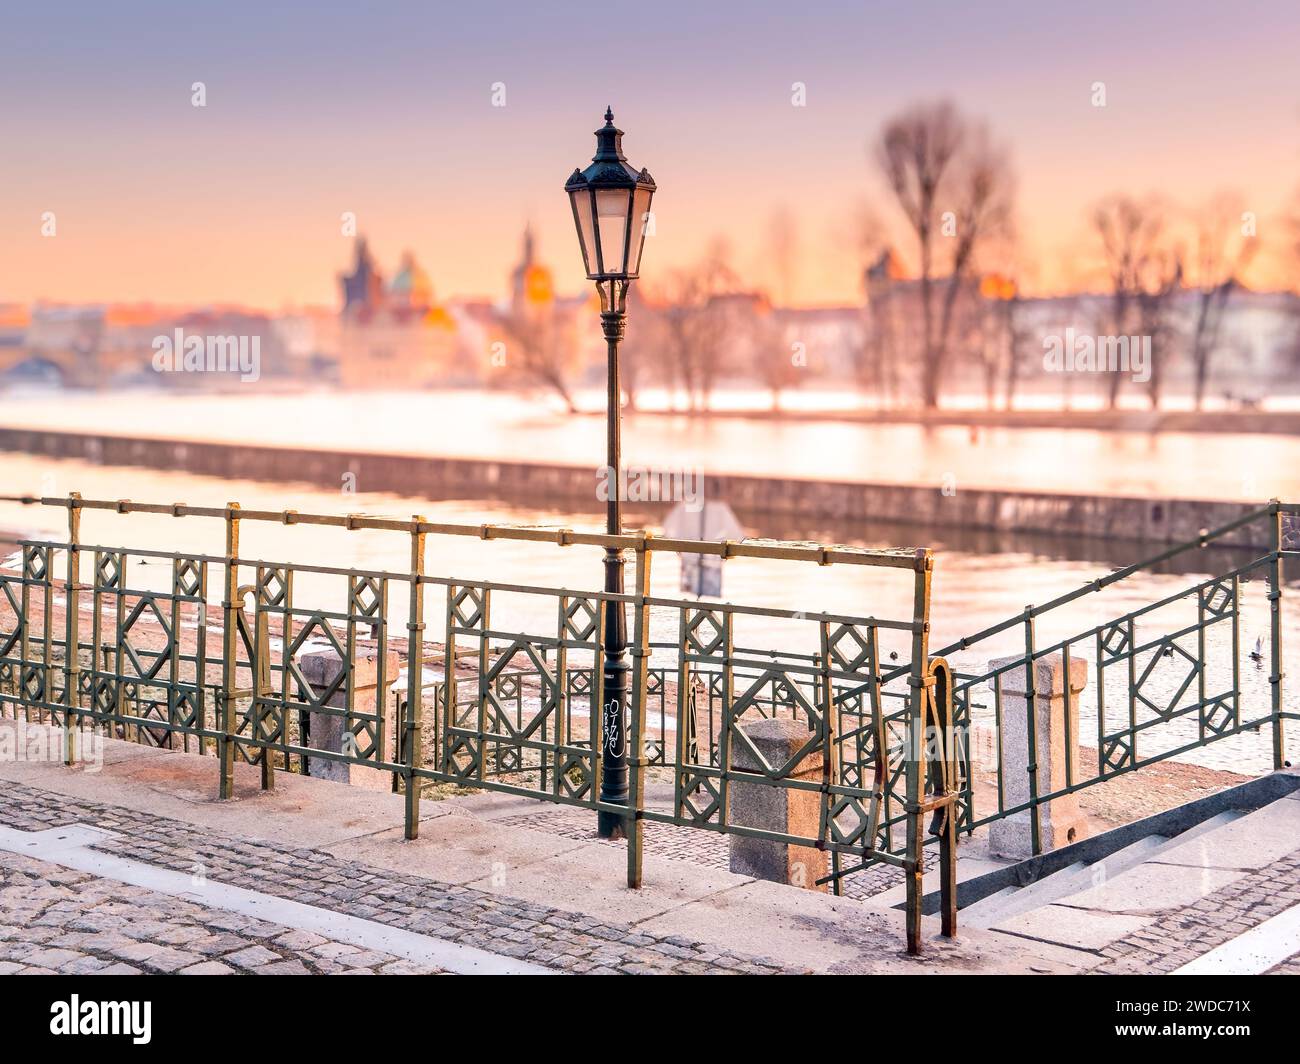 Aube glaciale en hiver sur Prague. Lueur dorée pittoresque et brume hivernale sur la rivière Vltava avec pont et ville historique autour. Prague, République tchèque Banque D'Images